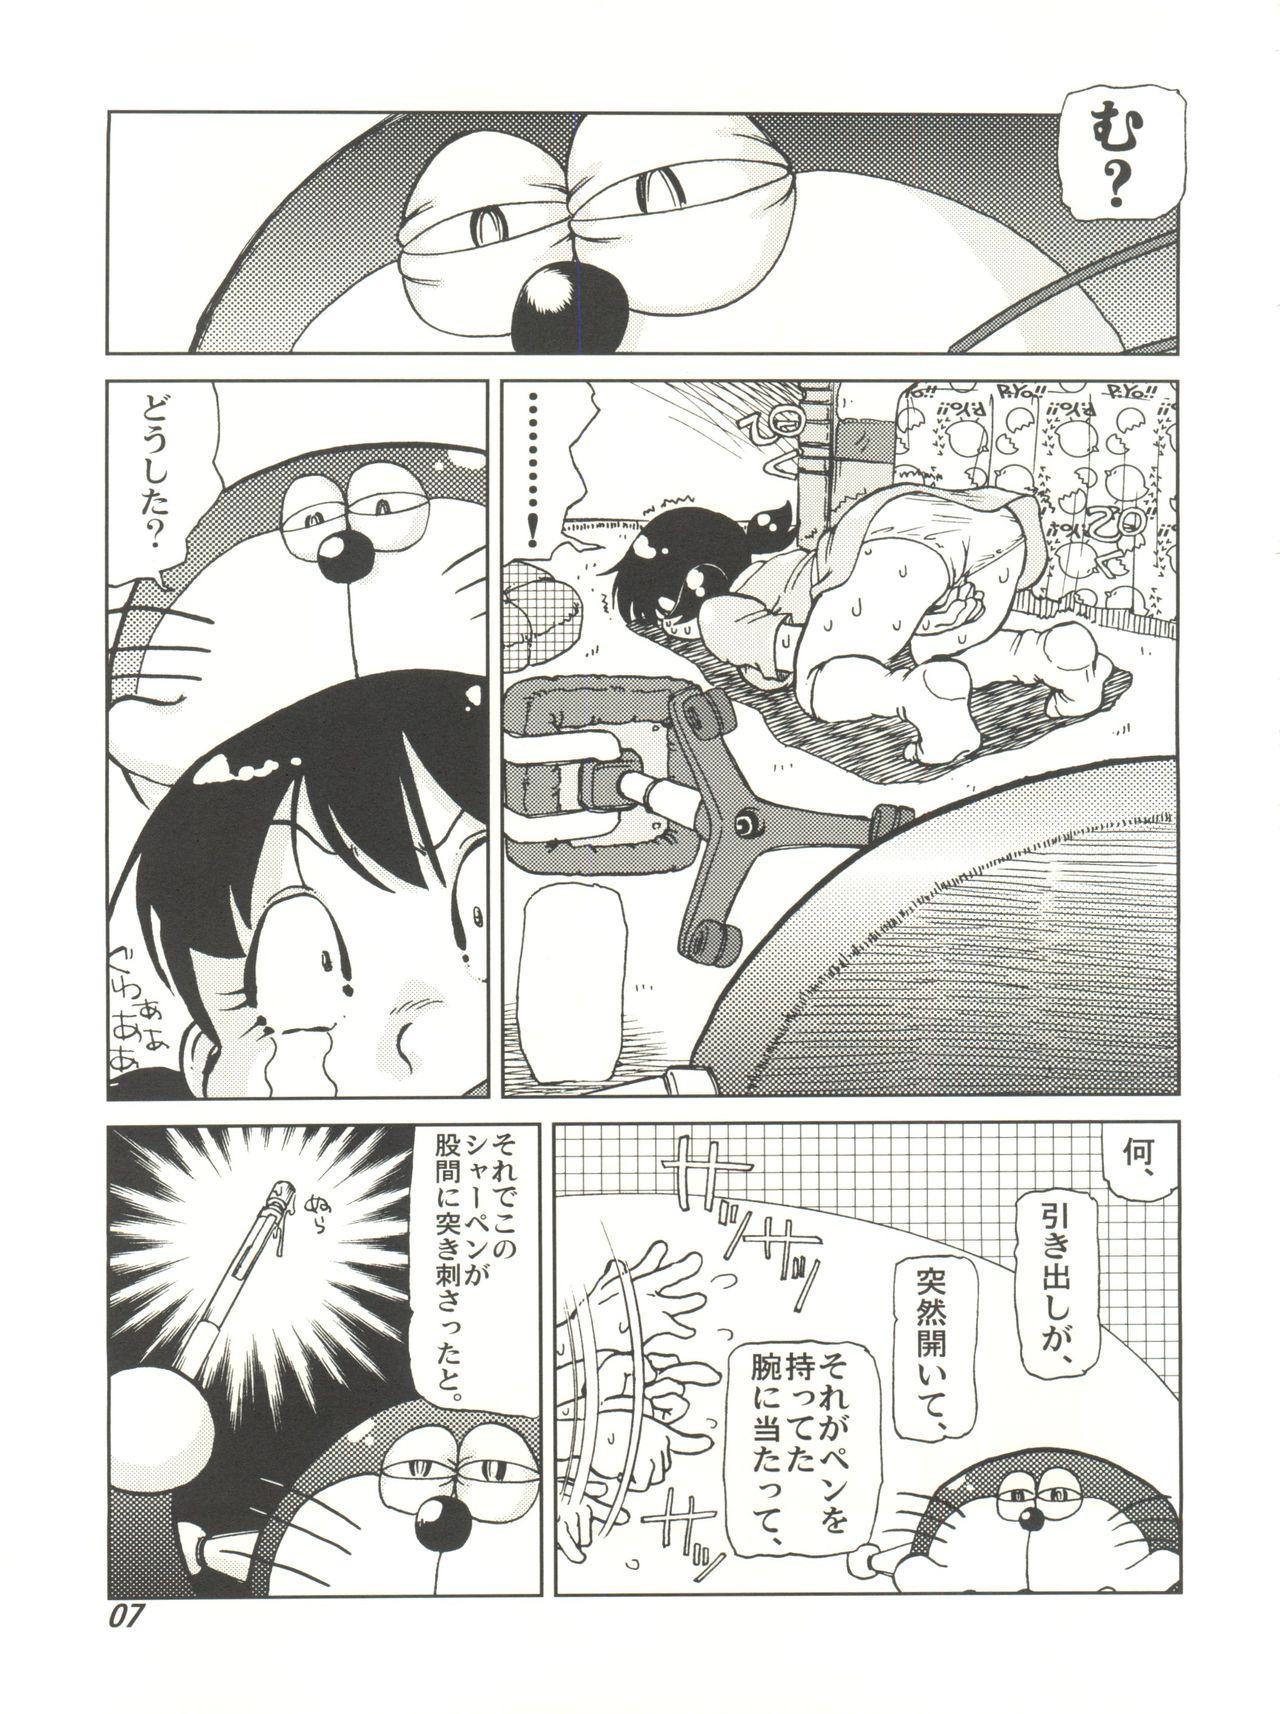 Analsex COUNTER DORA SHIZUKA & KAKUGARI GUARDIAN - Doraemon Amazing - Page 6